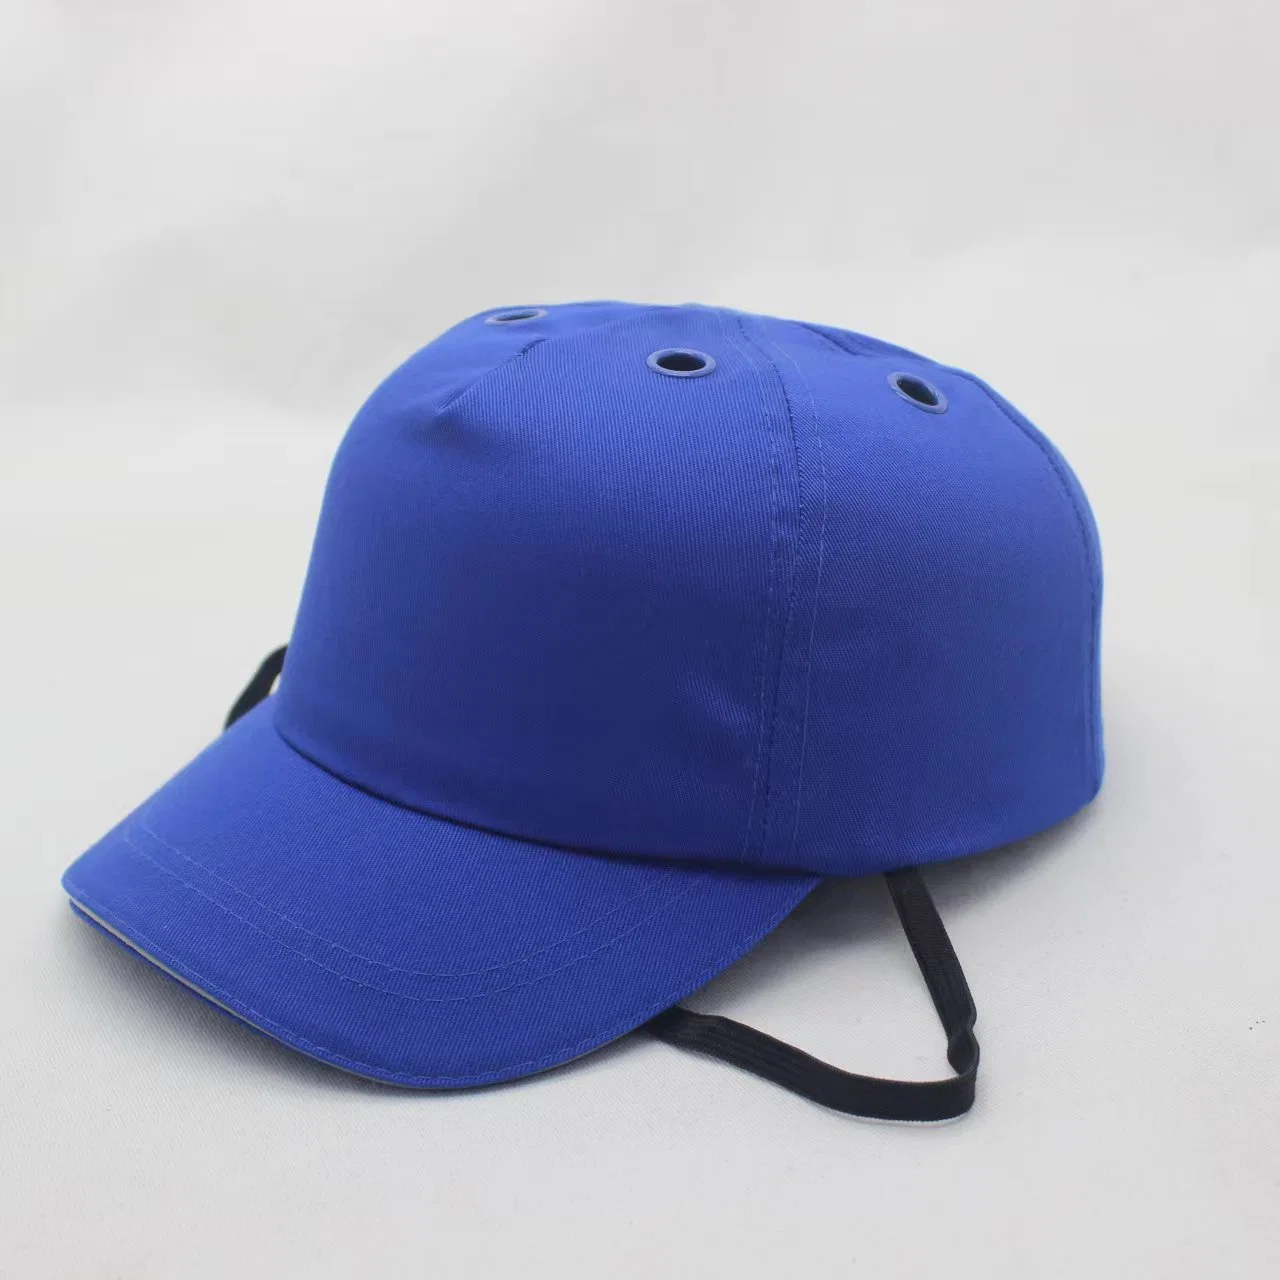 Armor 100% Cotton Blue Comfortable Safety Cap Baseball Bump Cap